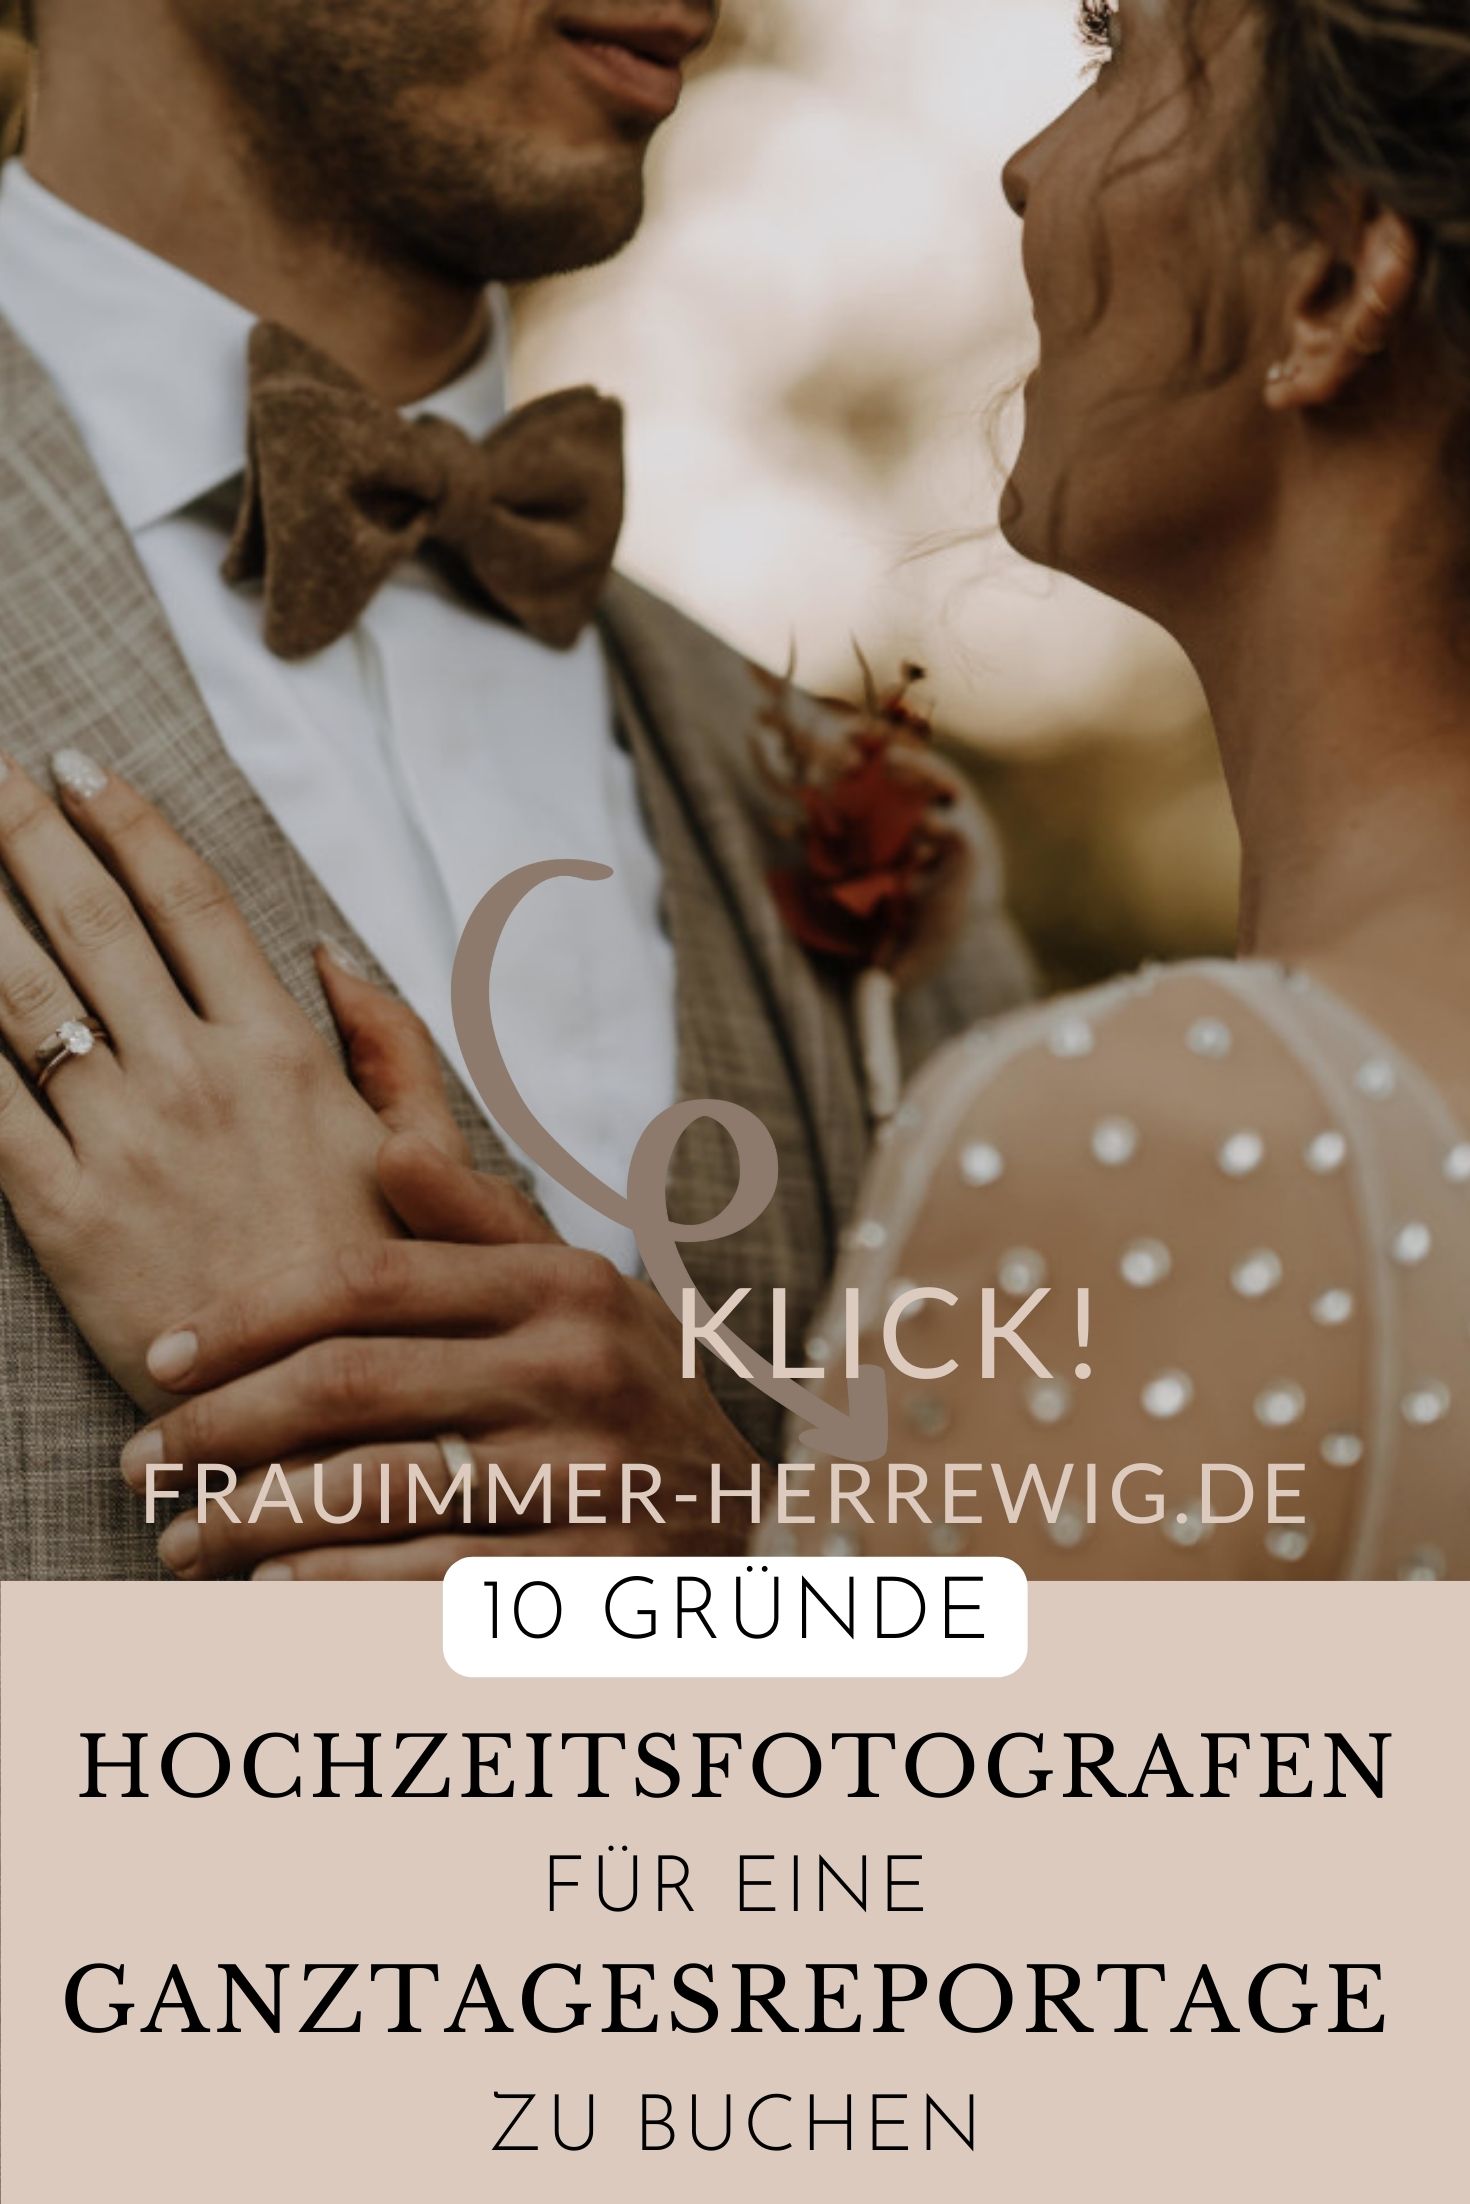 Hochzeitsfotograf ganzer tag – gesehen bei frauimmer-herrewig.de